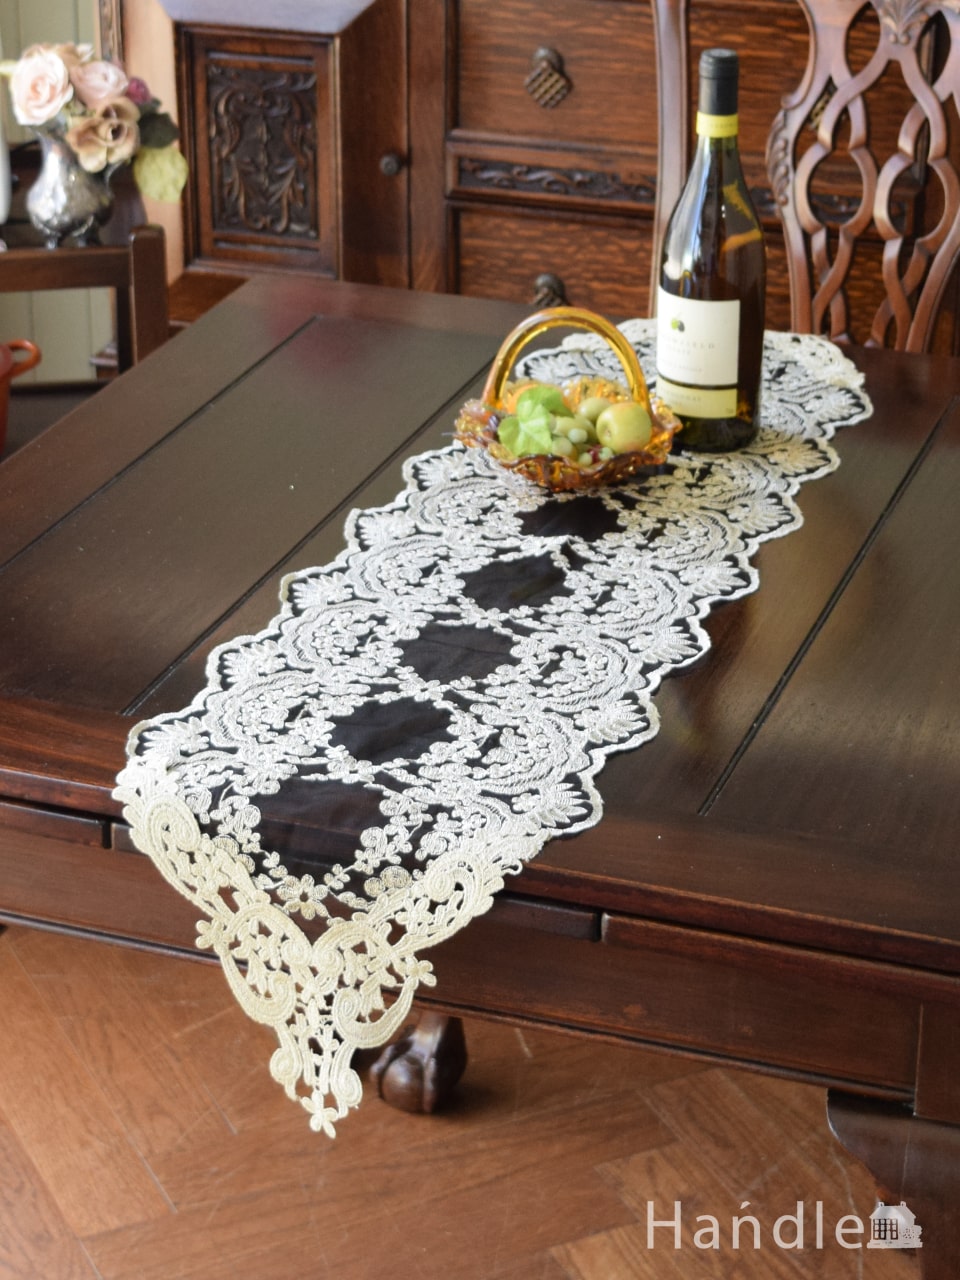 フレンチアンティーク調のテーブルランナー、華やかなお花の刺繍のレース120×30 (n20-111)